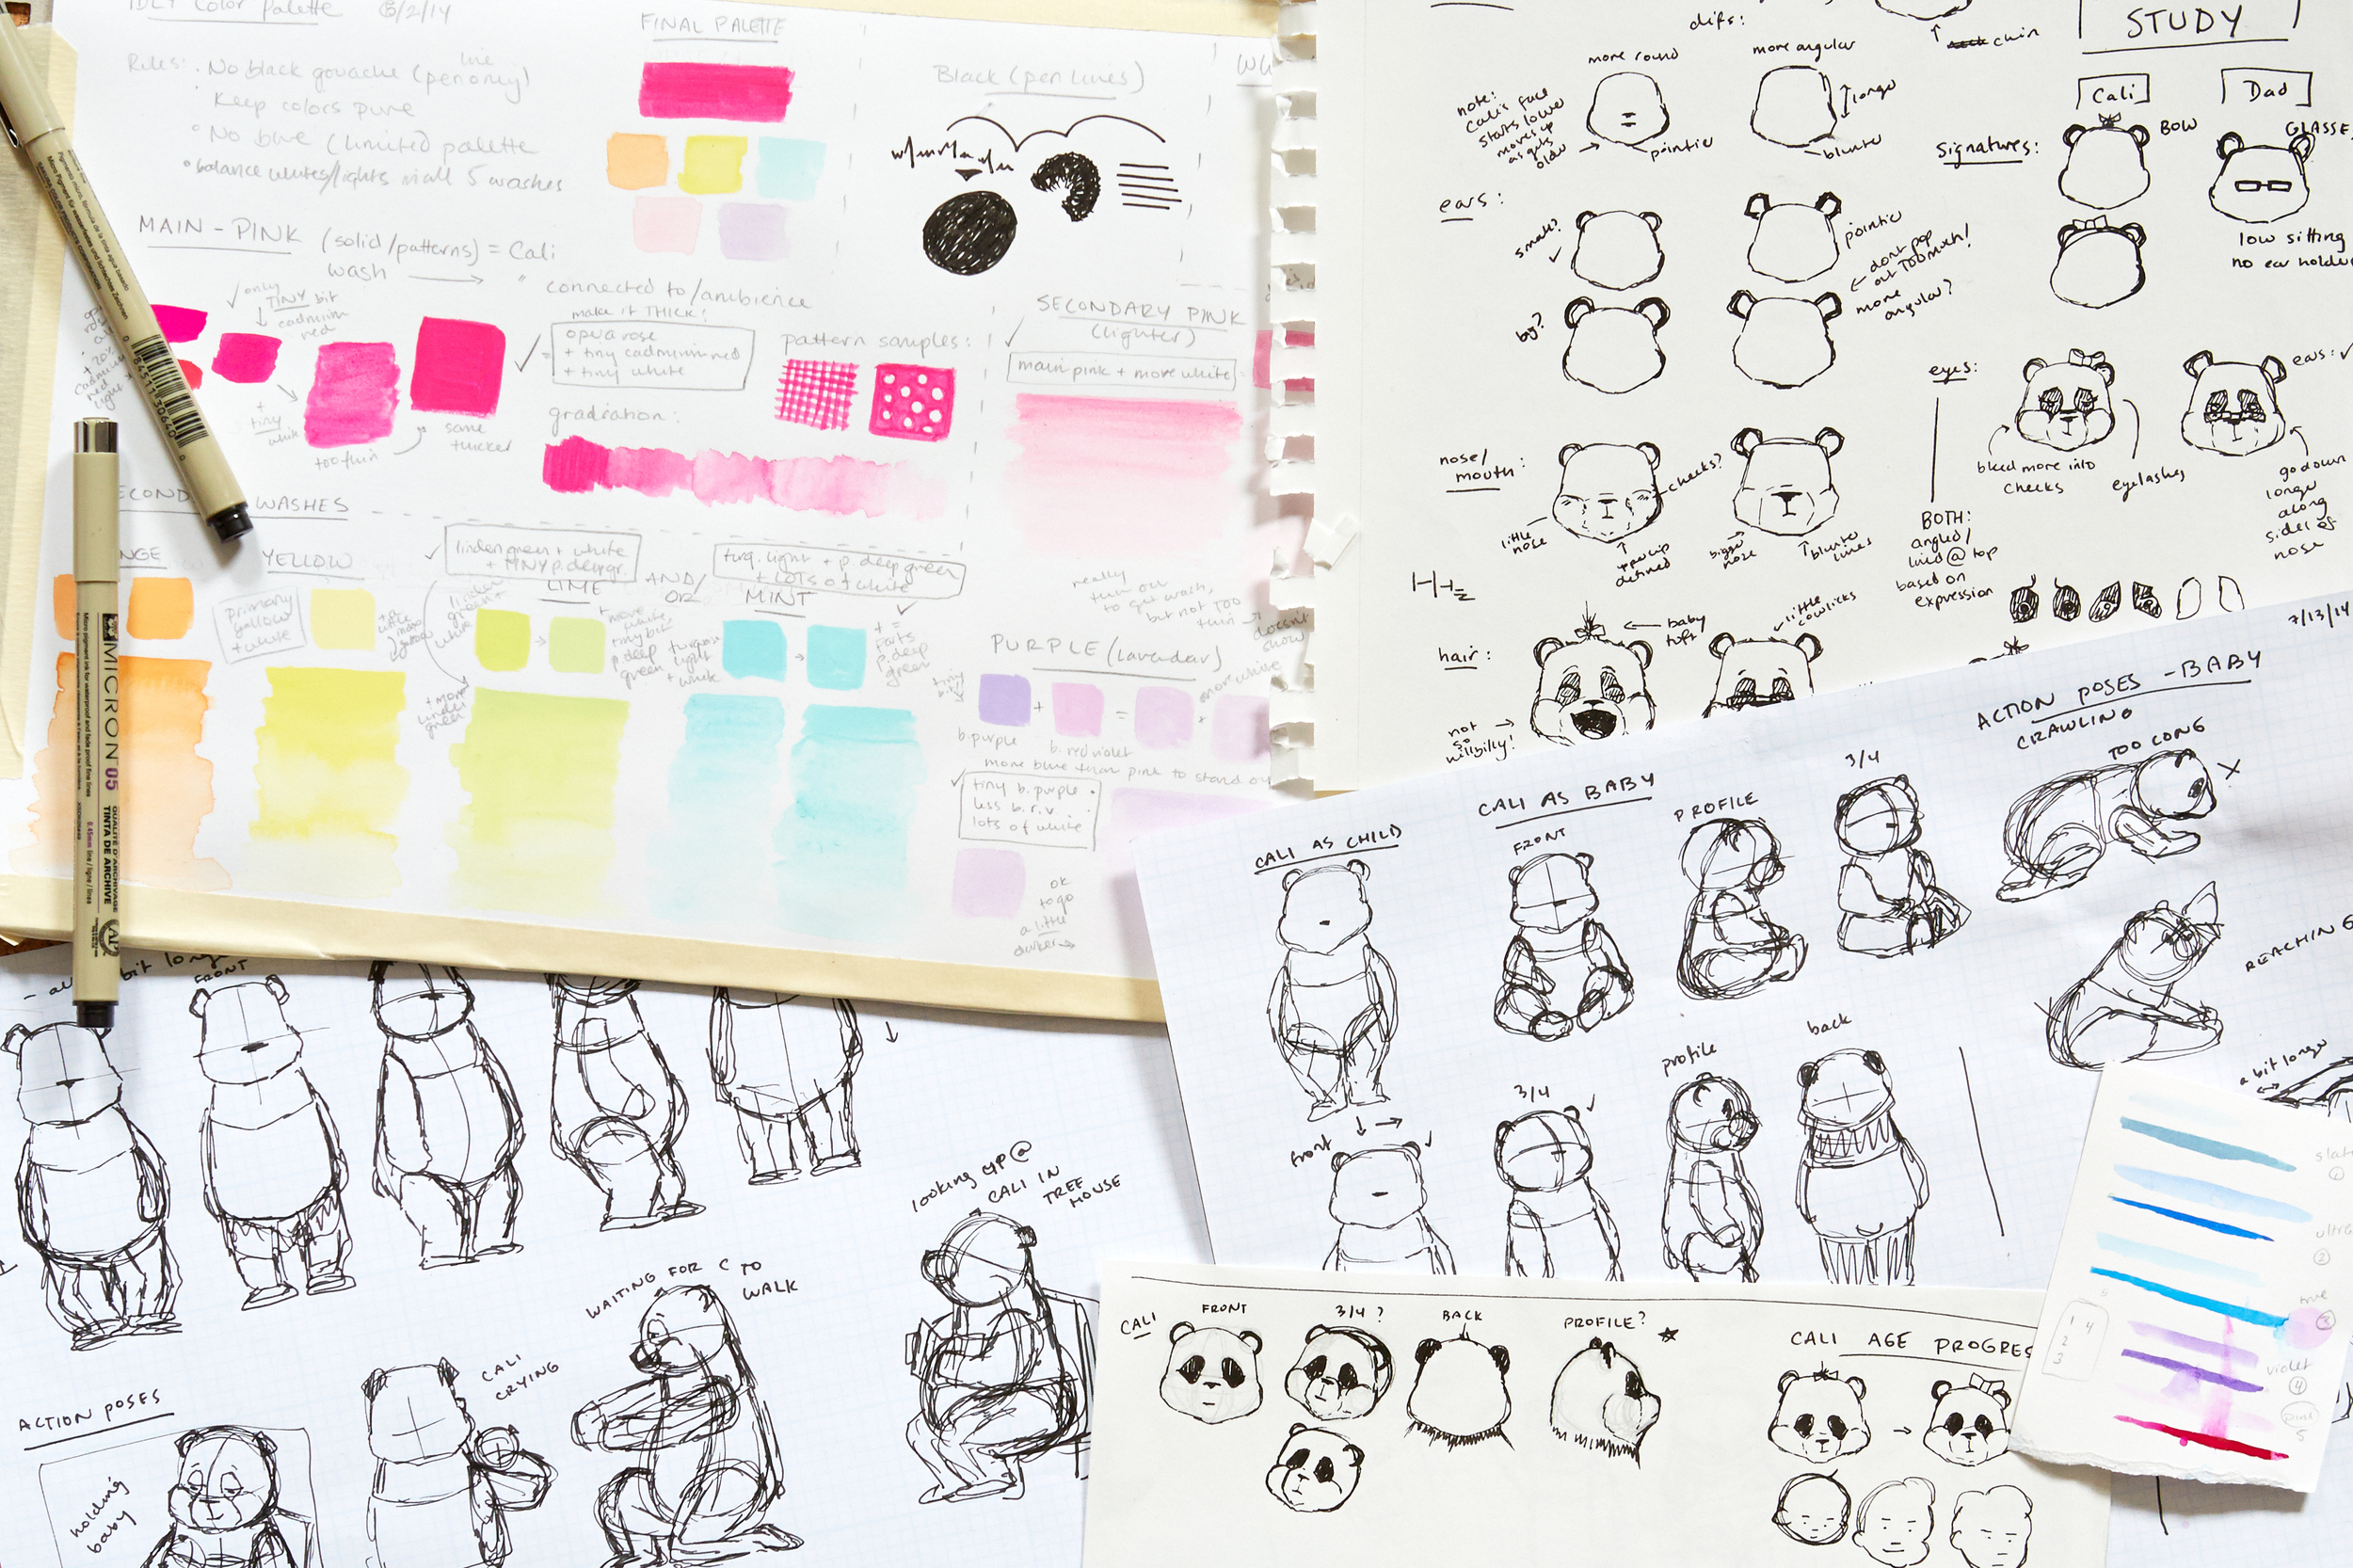 LoveDaddy_Brainstorm_Color&CharacterStudies.jpg